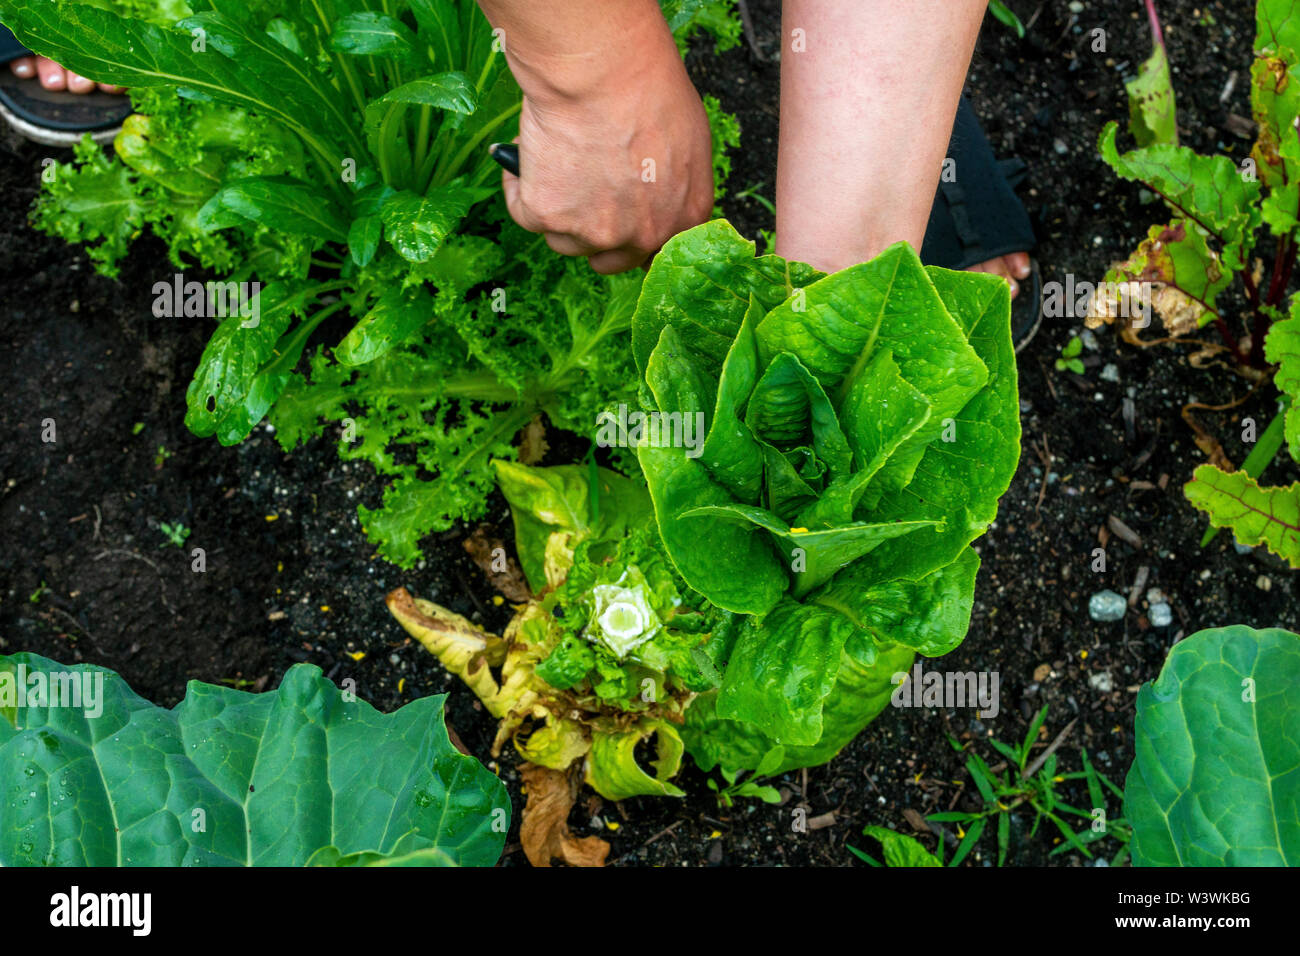 A women cuts a head of lettuce in her backyard vegetable garden. Stock Photo